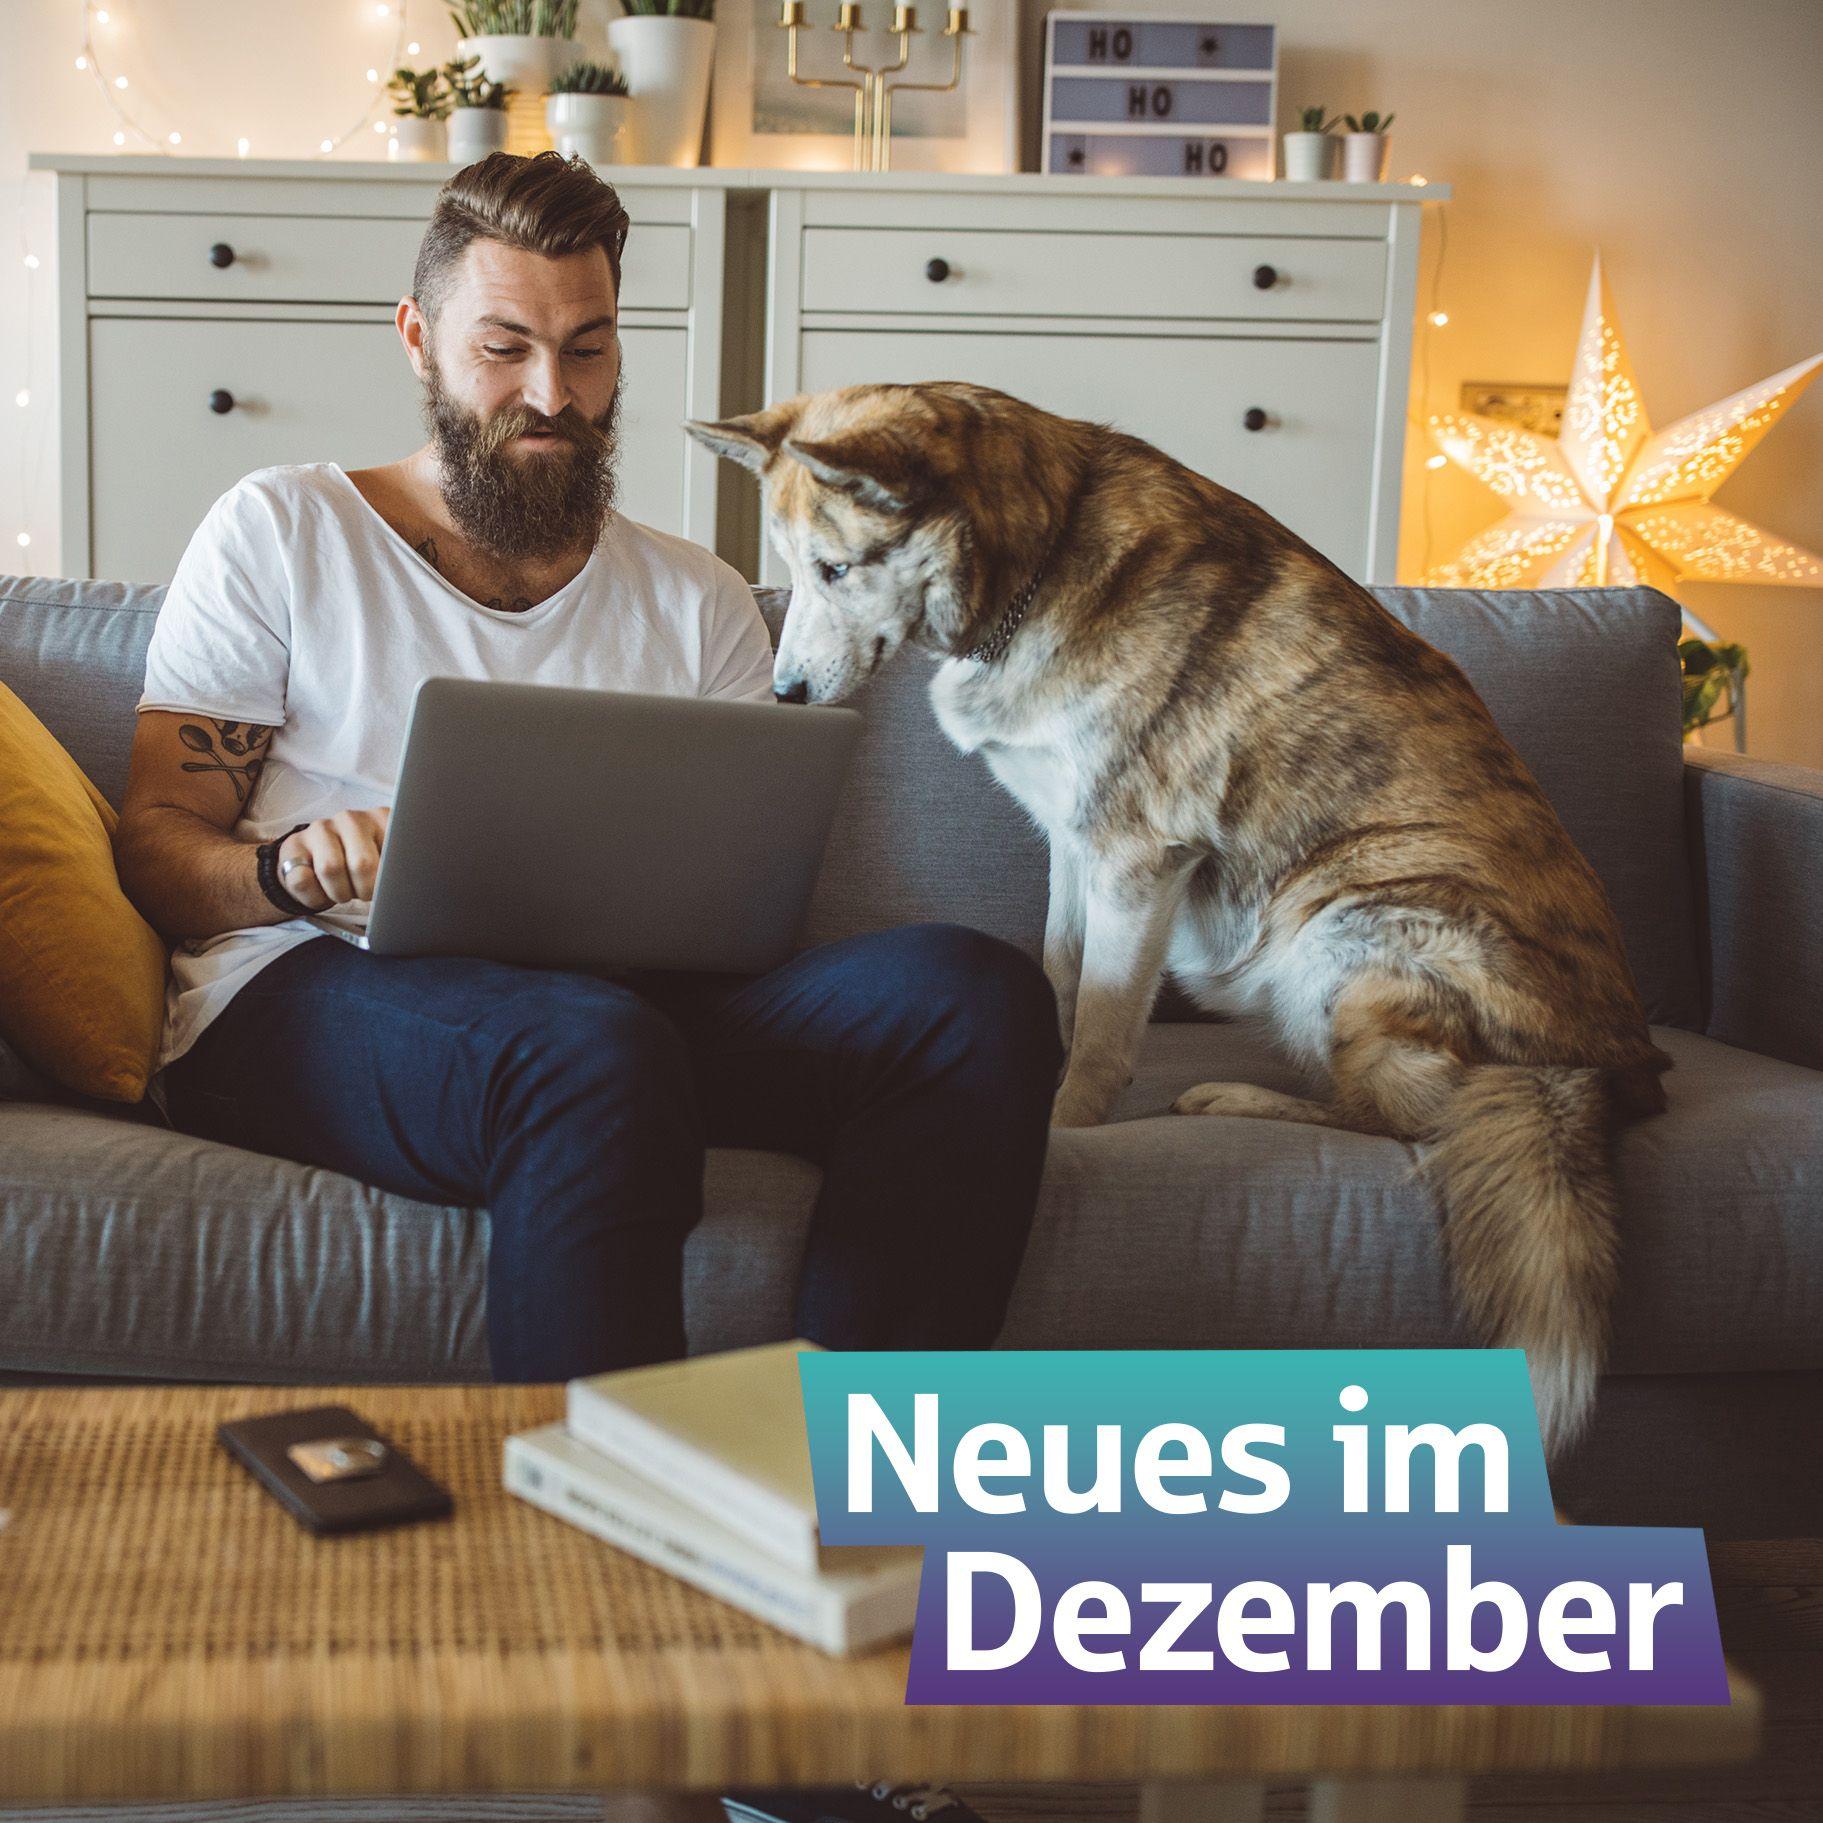 Ein Mann mit seinem Hund auf dem Sofa. Im Hintergrund ein beleuchteter Stern. Im Vordergrund steht auf einem farbigen Hintergrund "Neues im Dezember"